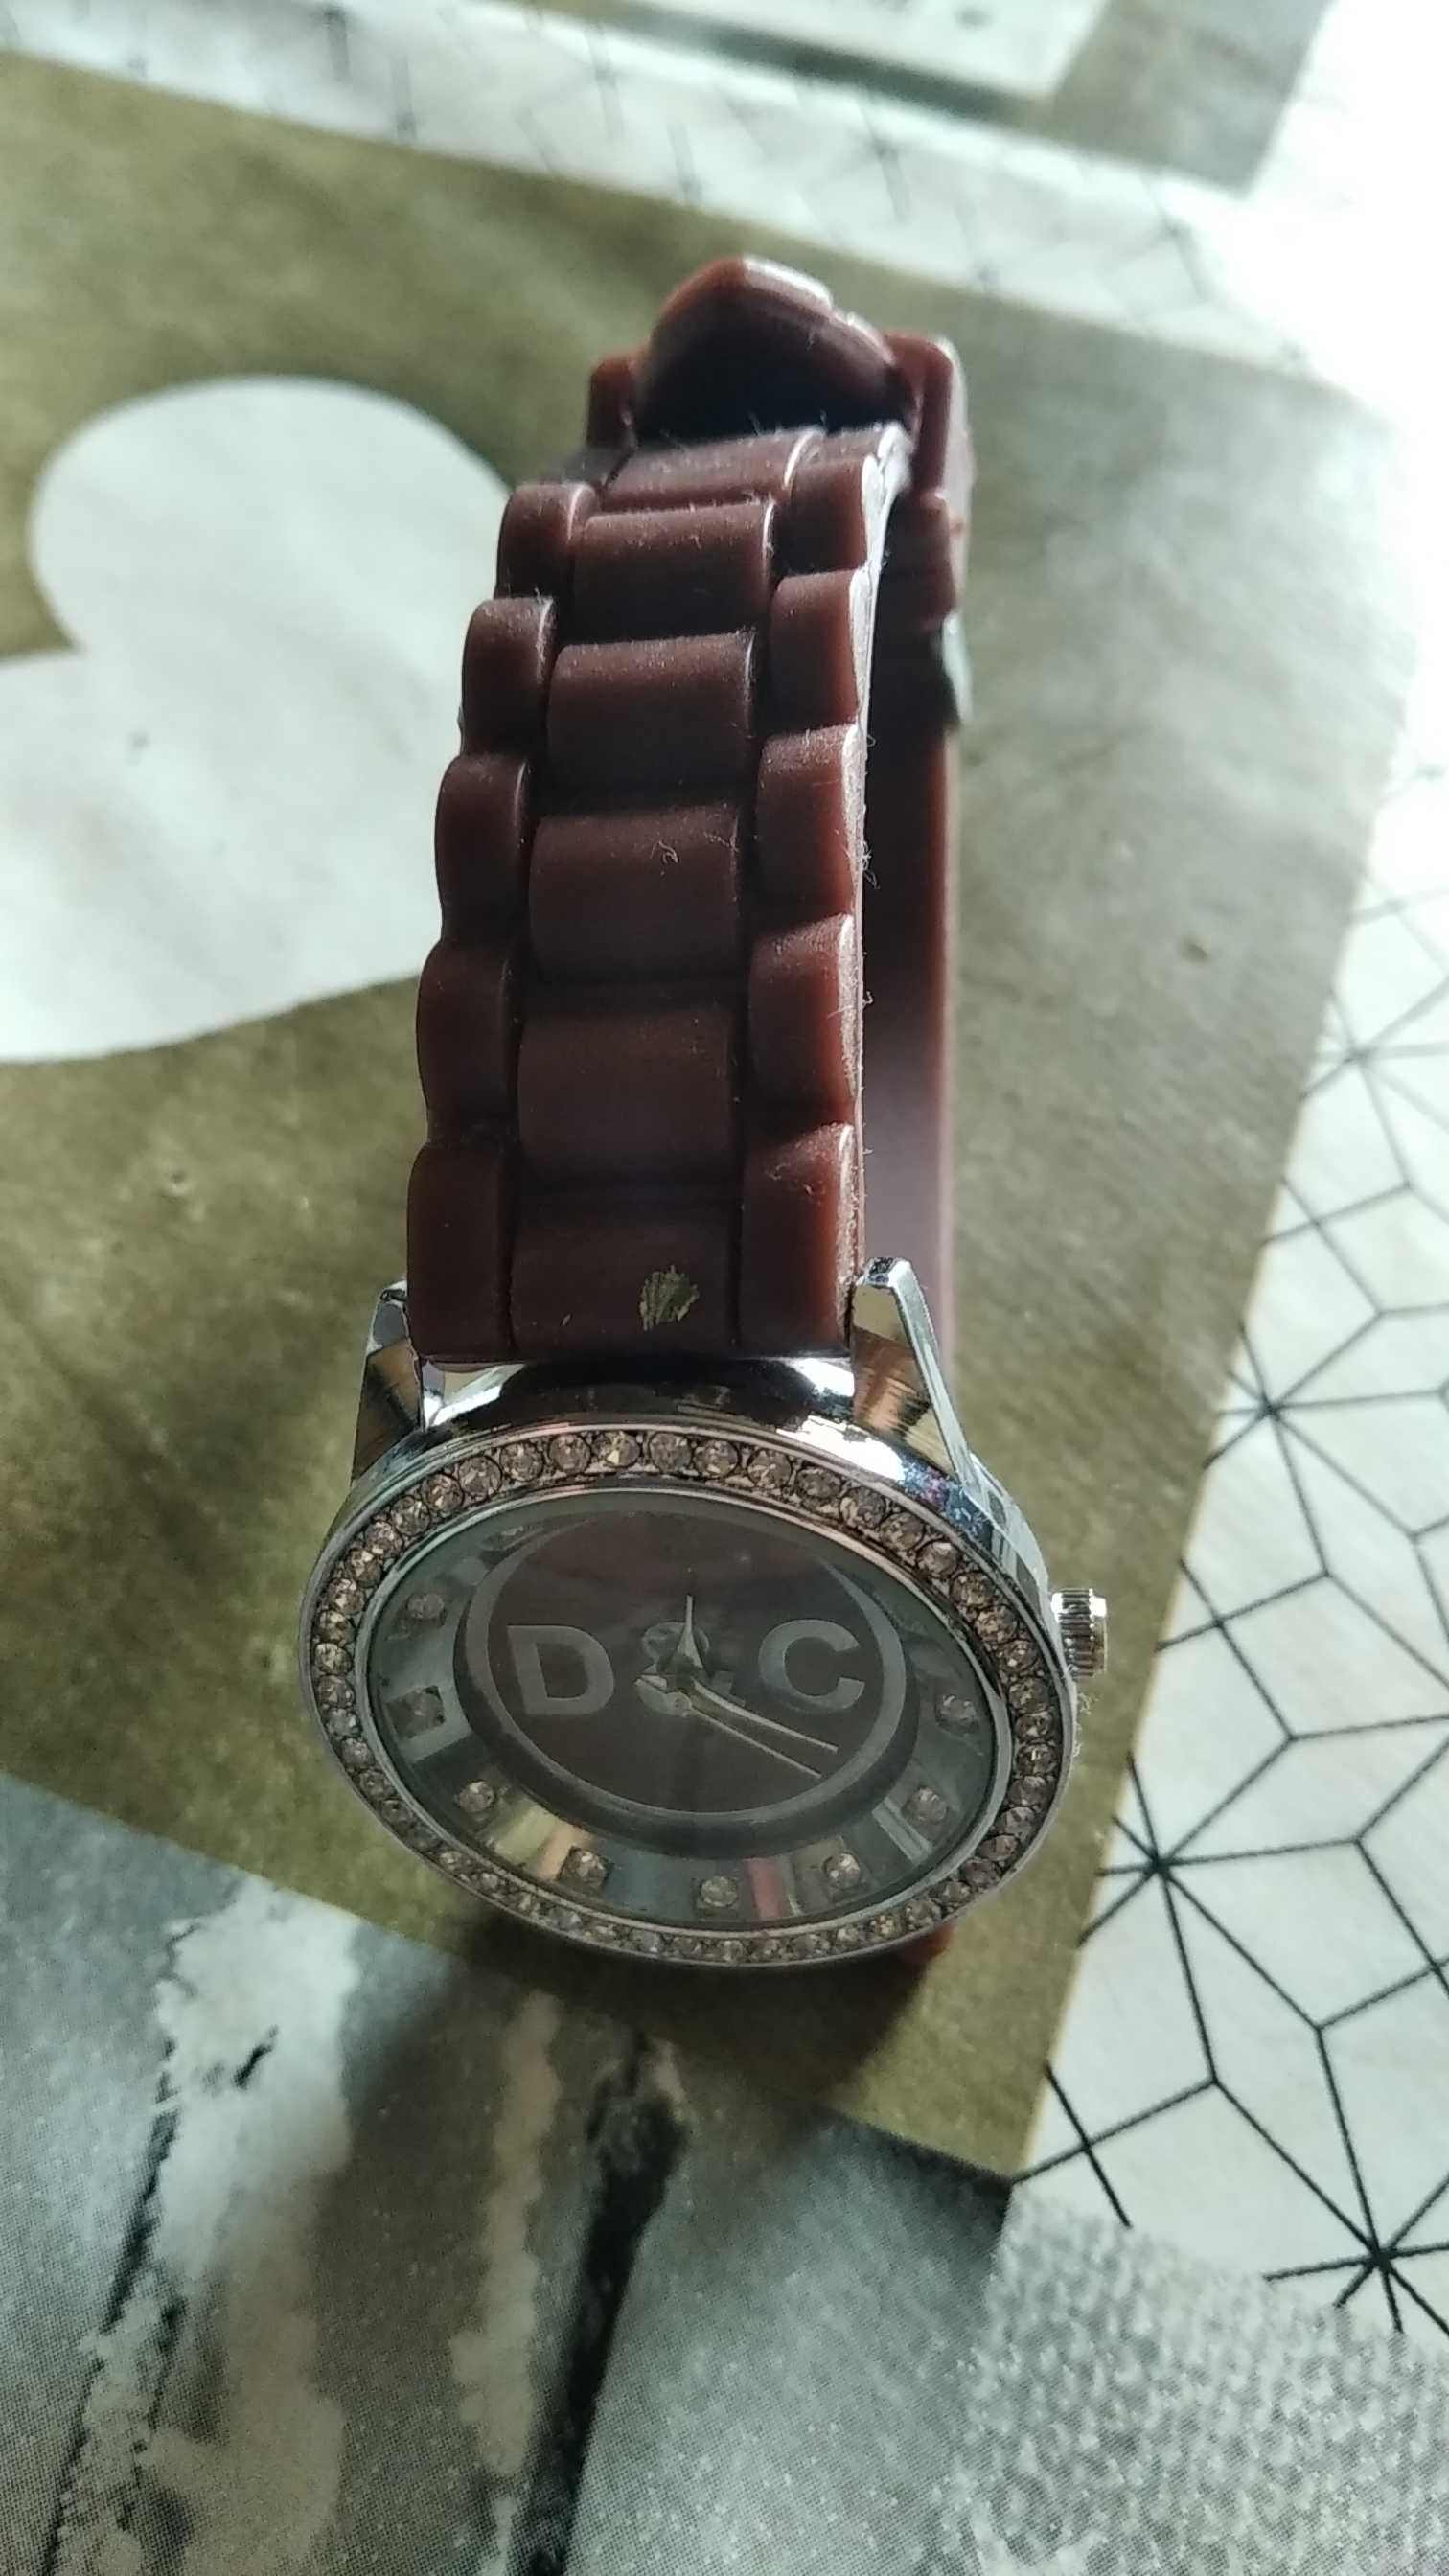 Relógio de mulher D&C novo com pormenor com pedras brilhantes